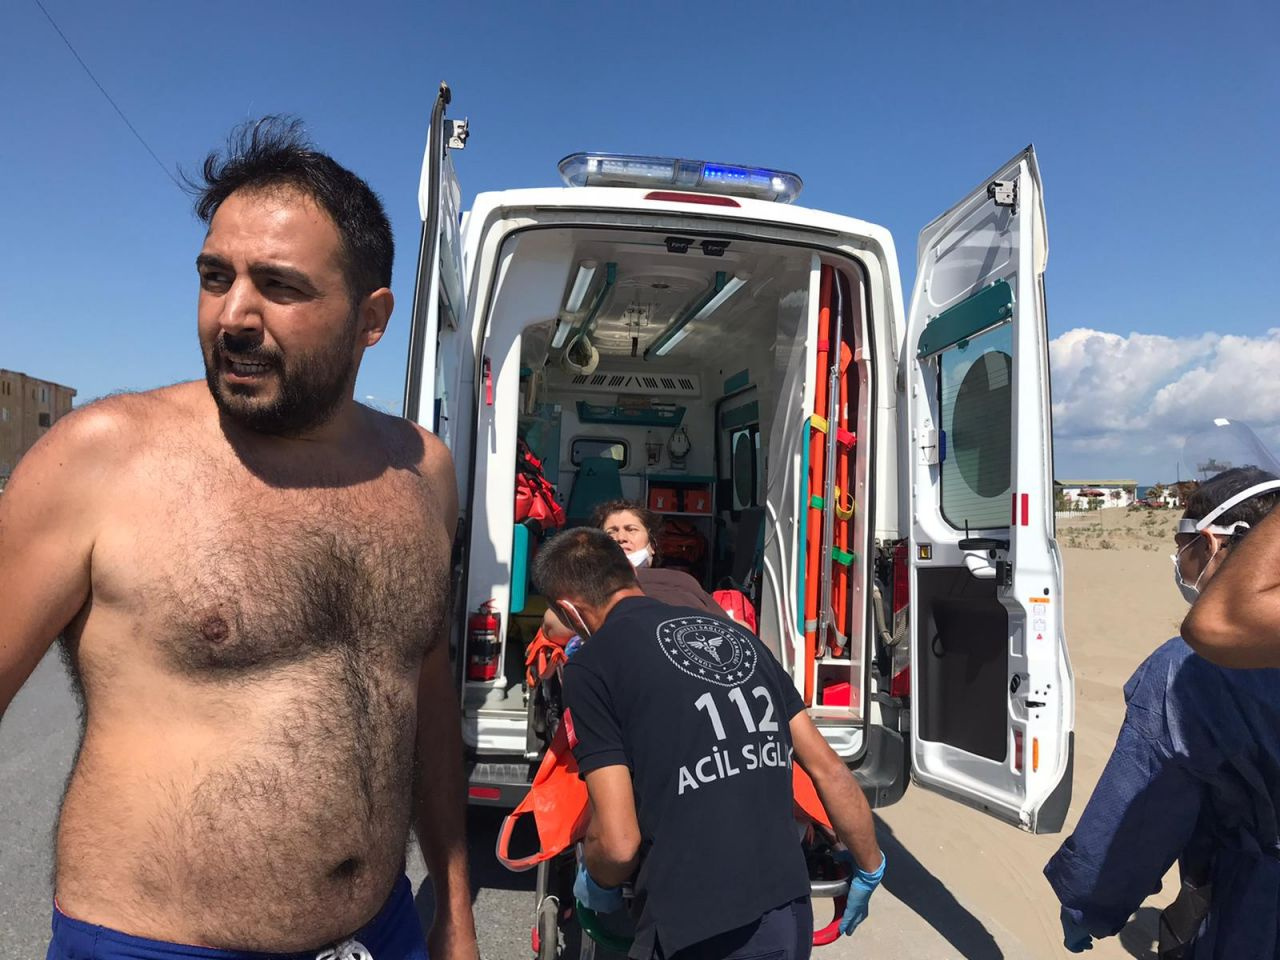 Sakarya Karasu plajında bir kişi komşularını bıçakladı